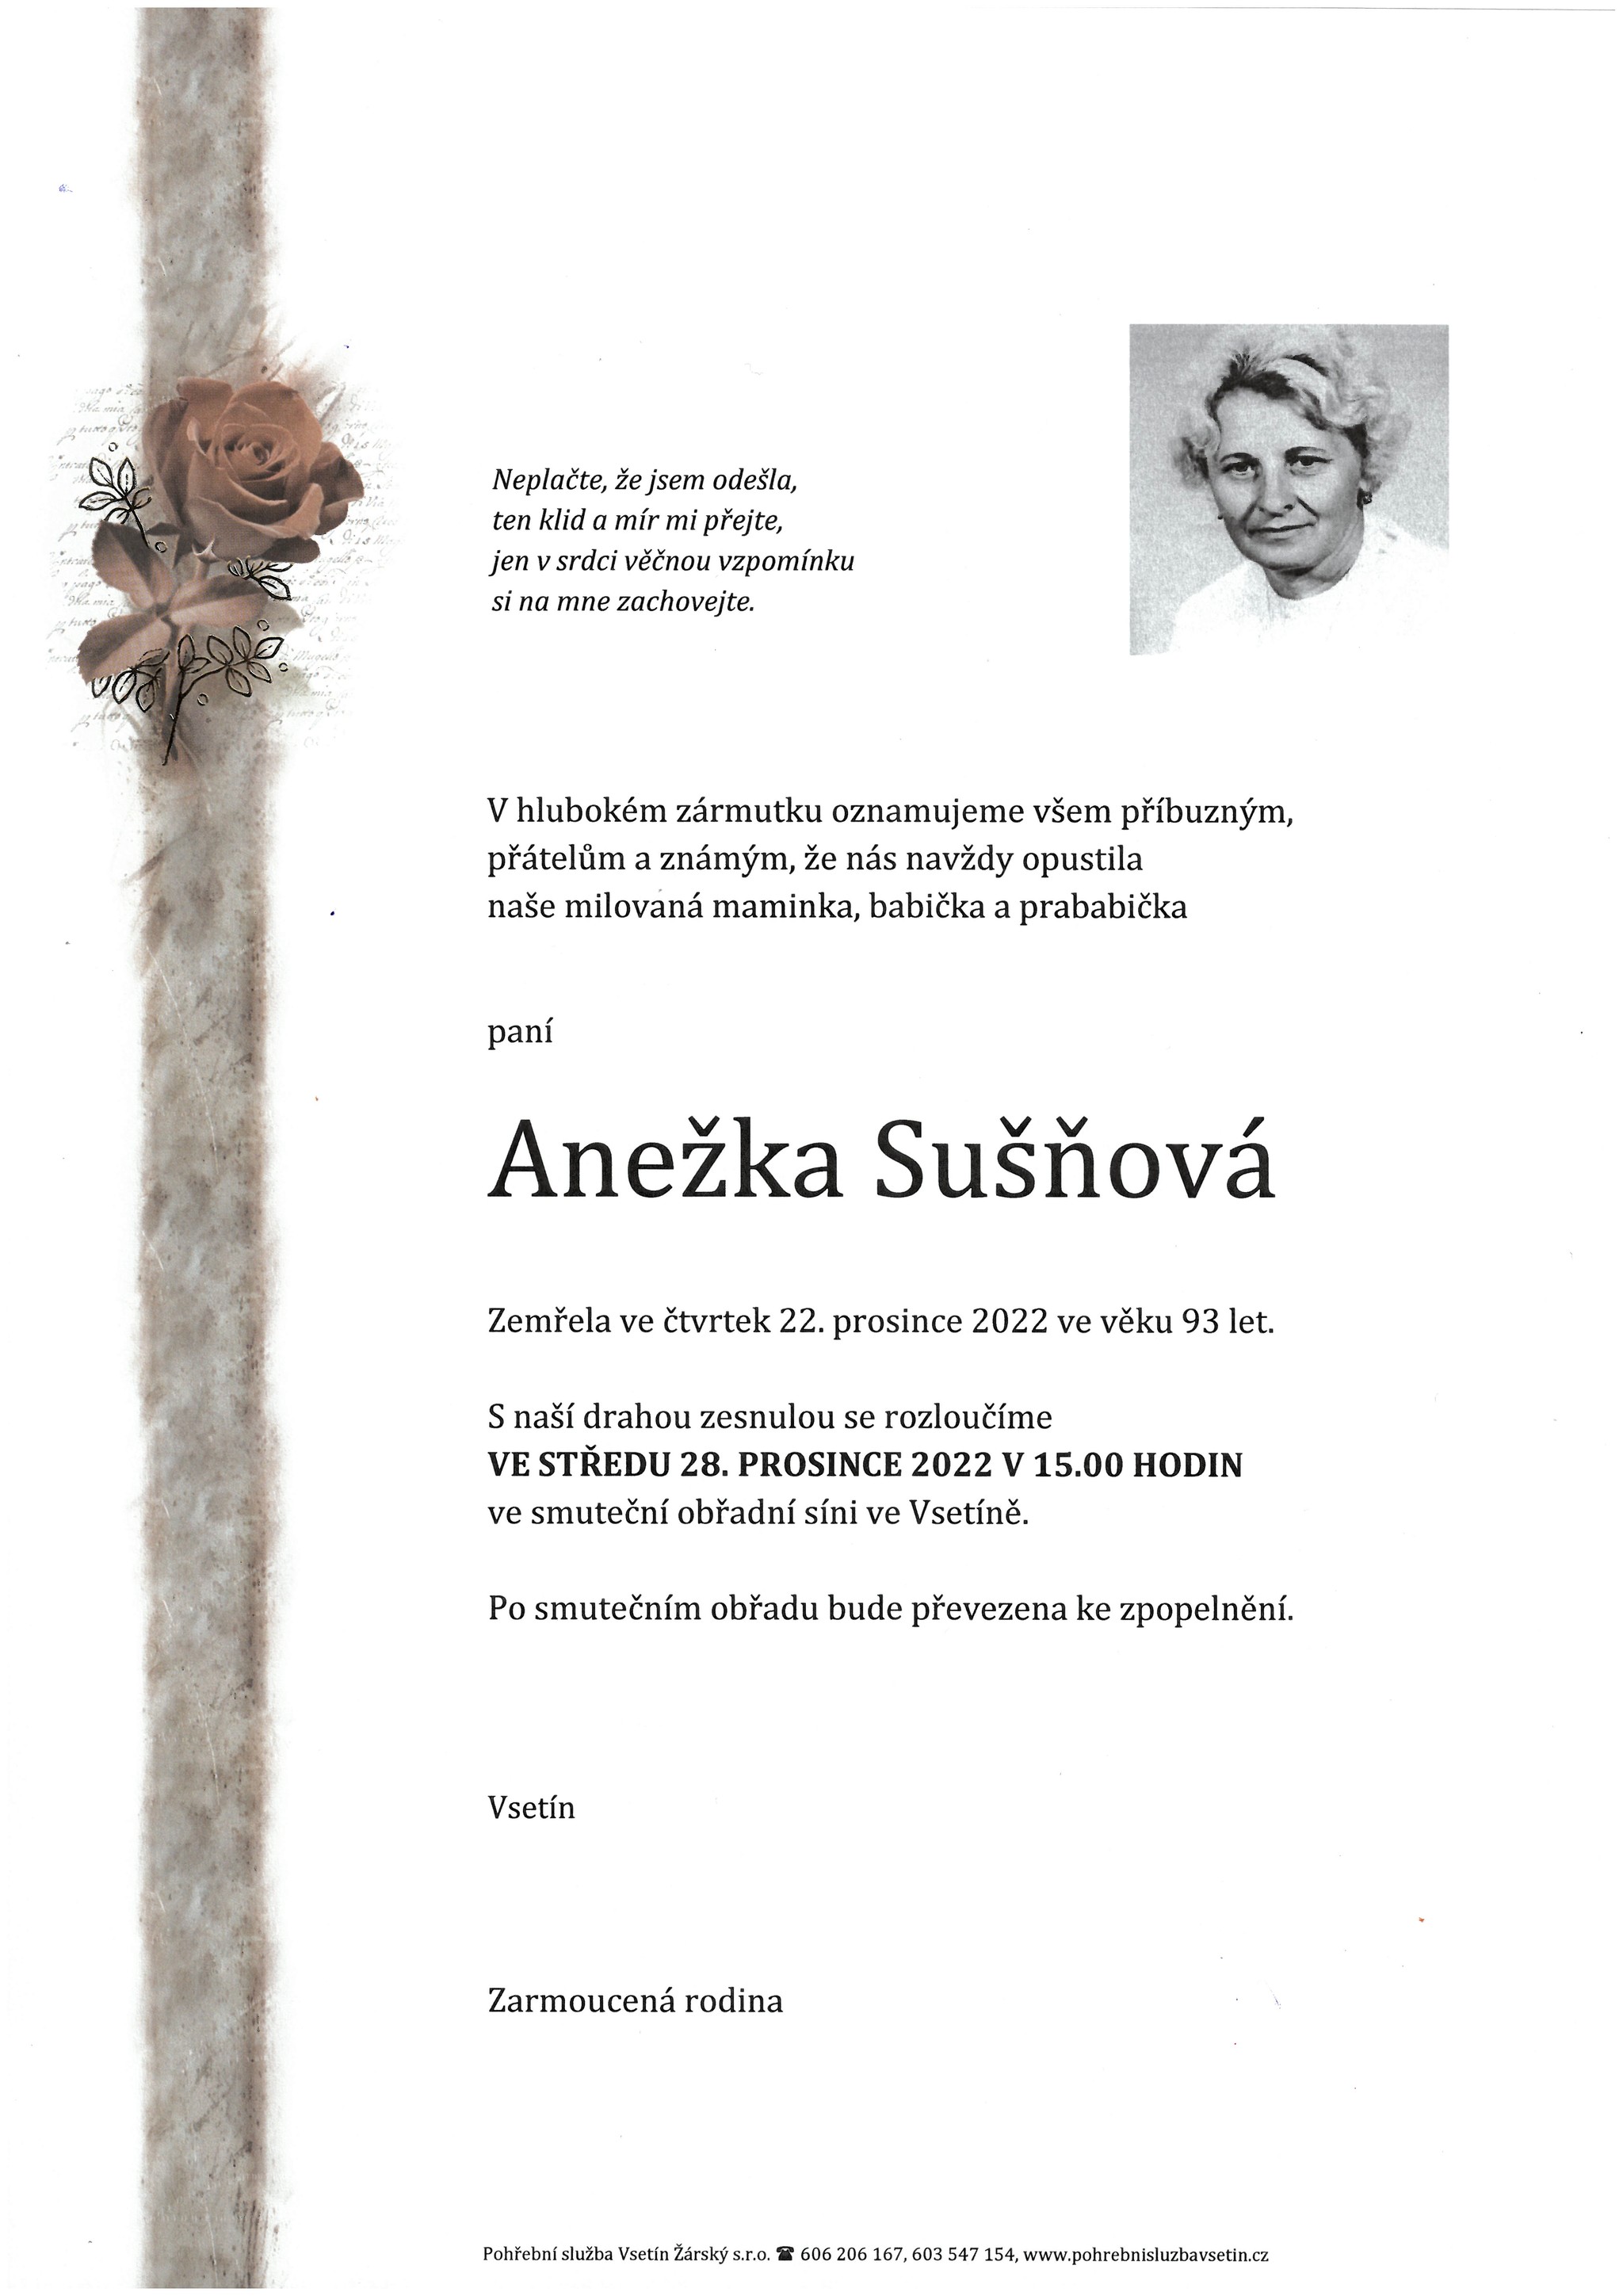 Anežka Sušňová